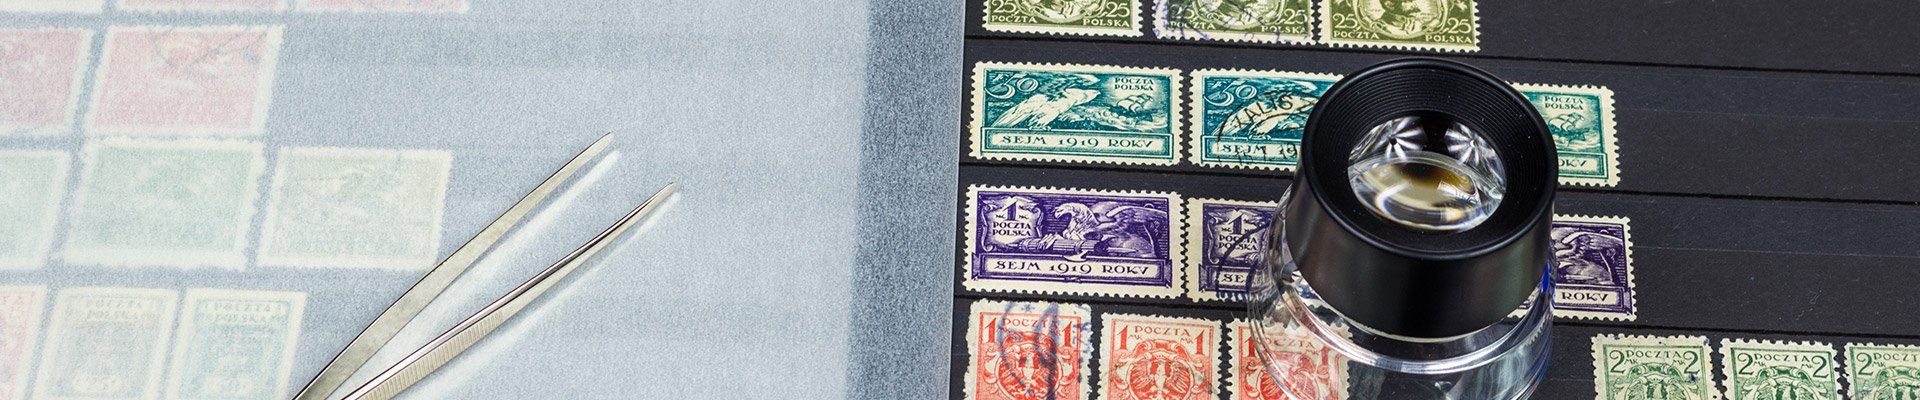 Collection de timbres identiques soigneusement rangés